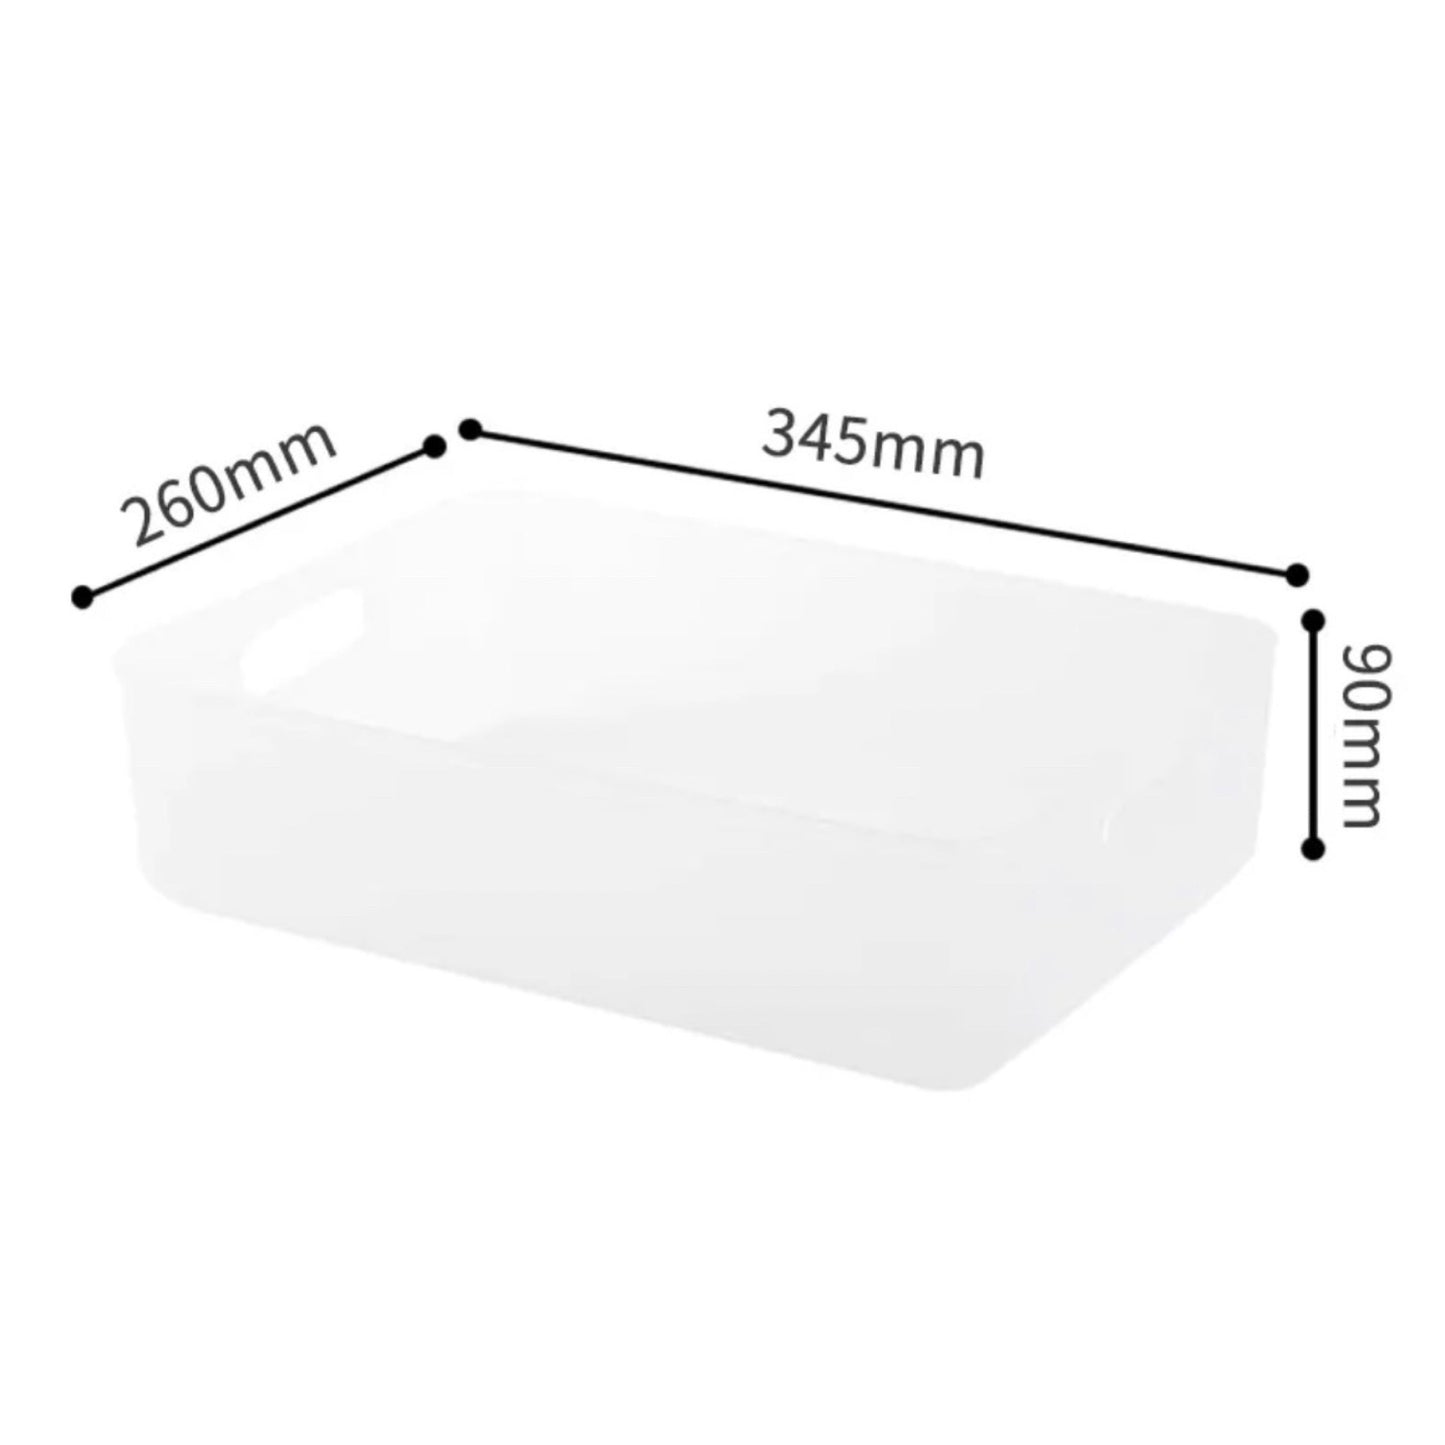 Weiße Aufbewahrungsbox mit Maßangaben. Die Länge beträgt 345 mm an der oberen Kante, die Breite 260 mm an der seitlichen Kante und die Höhe der Box ist 90 mm.